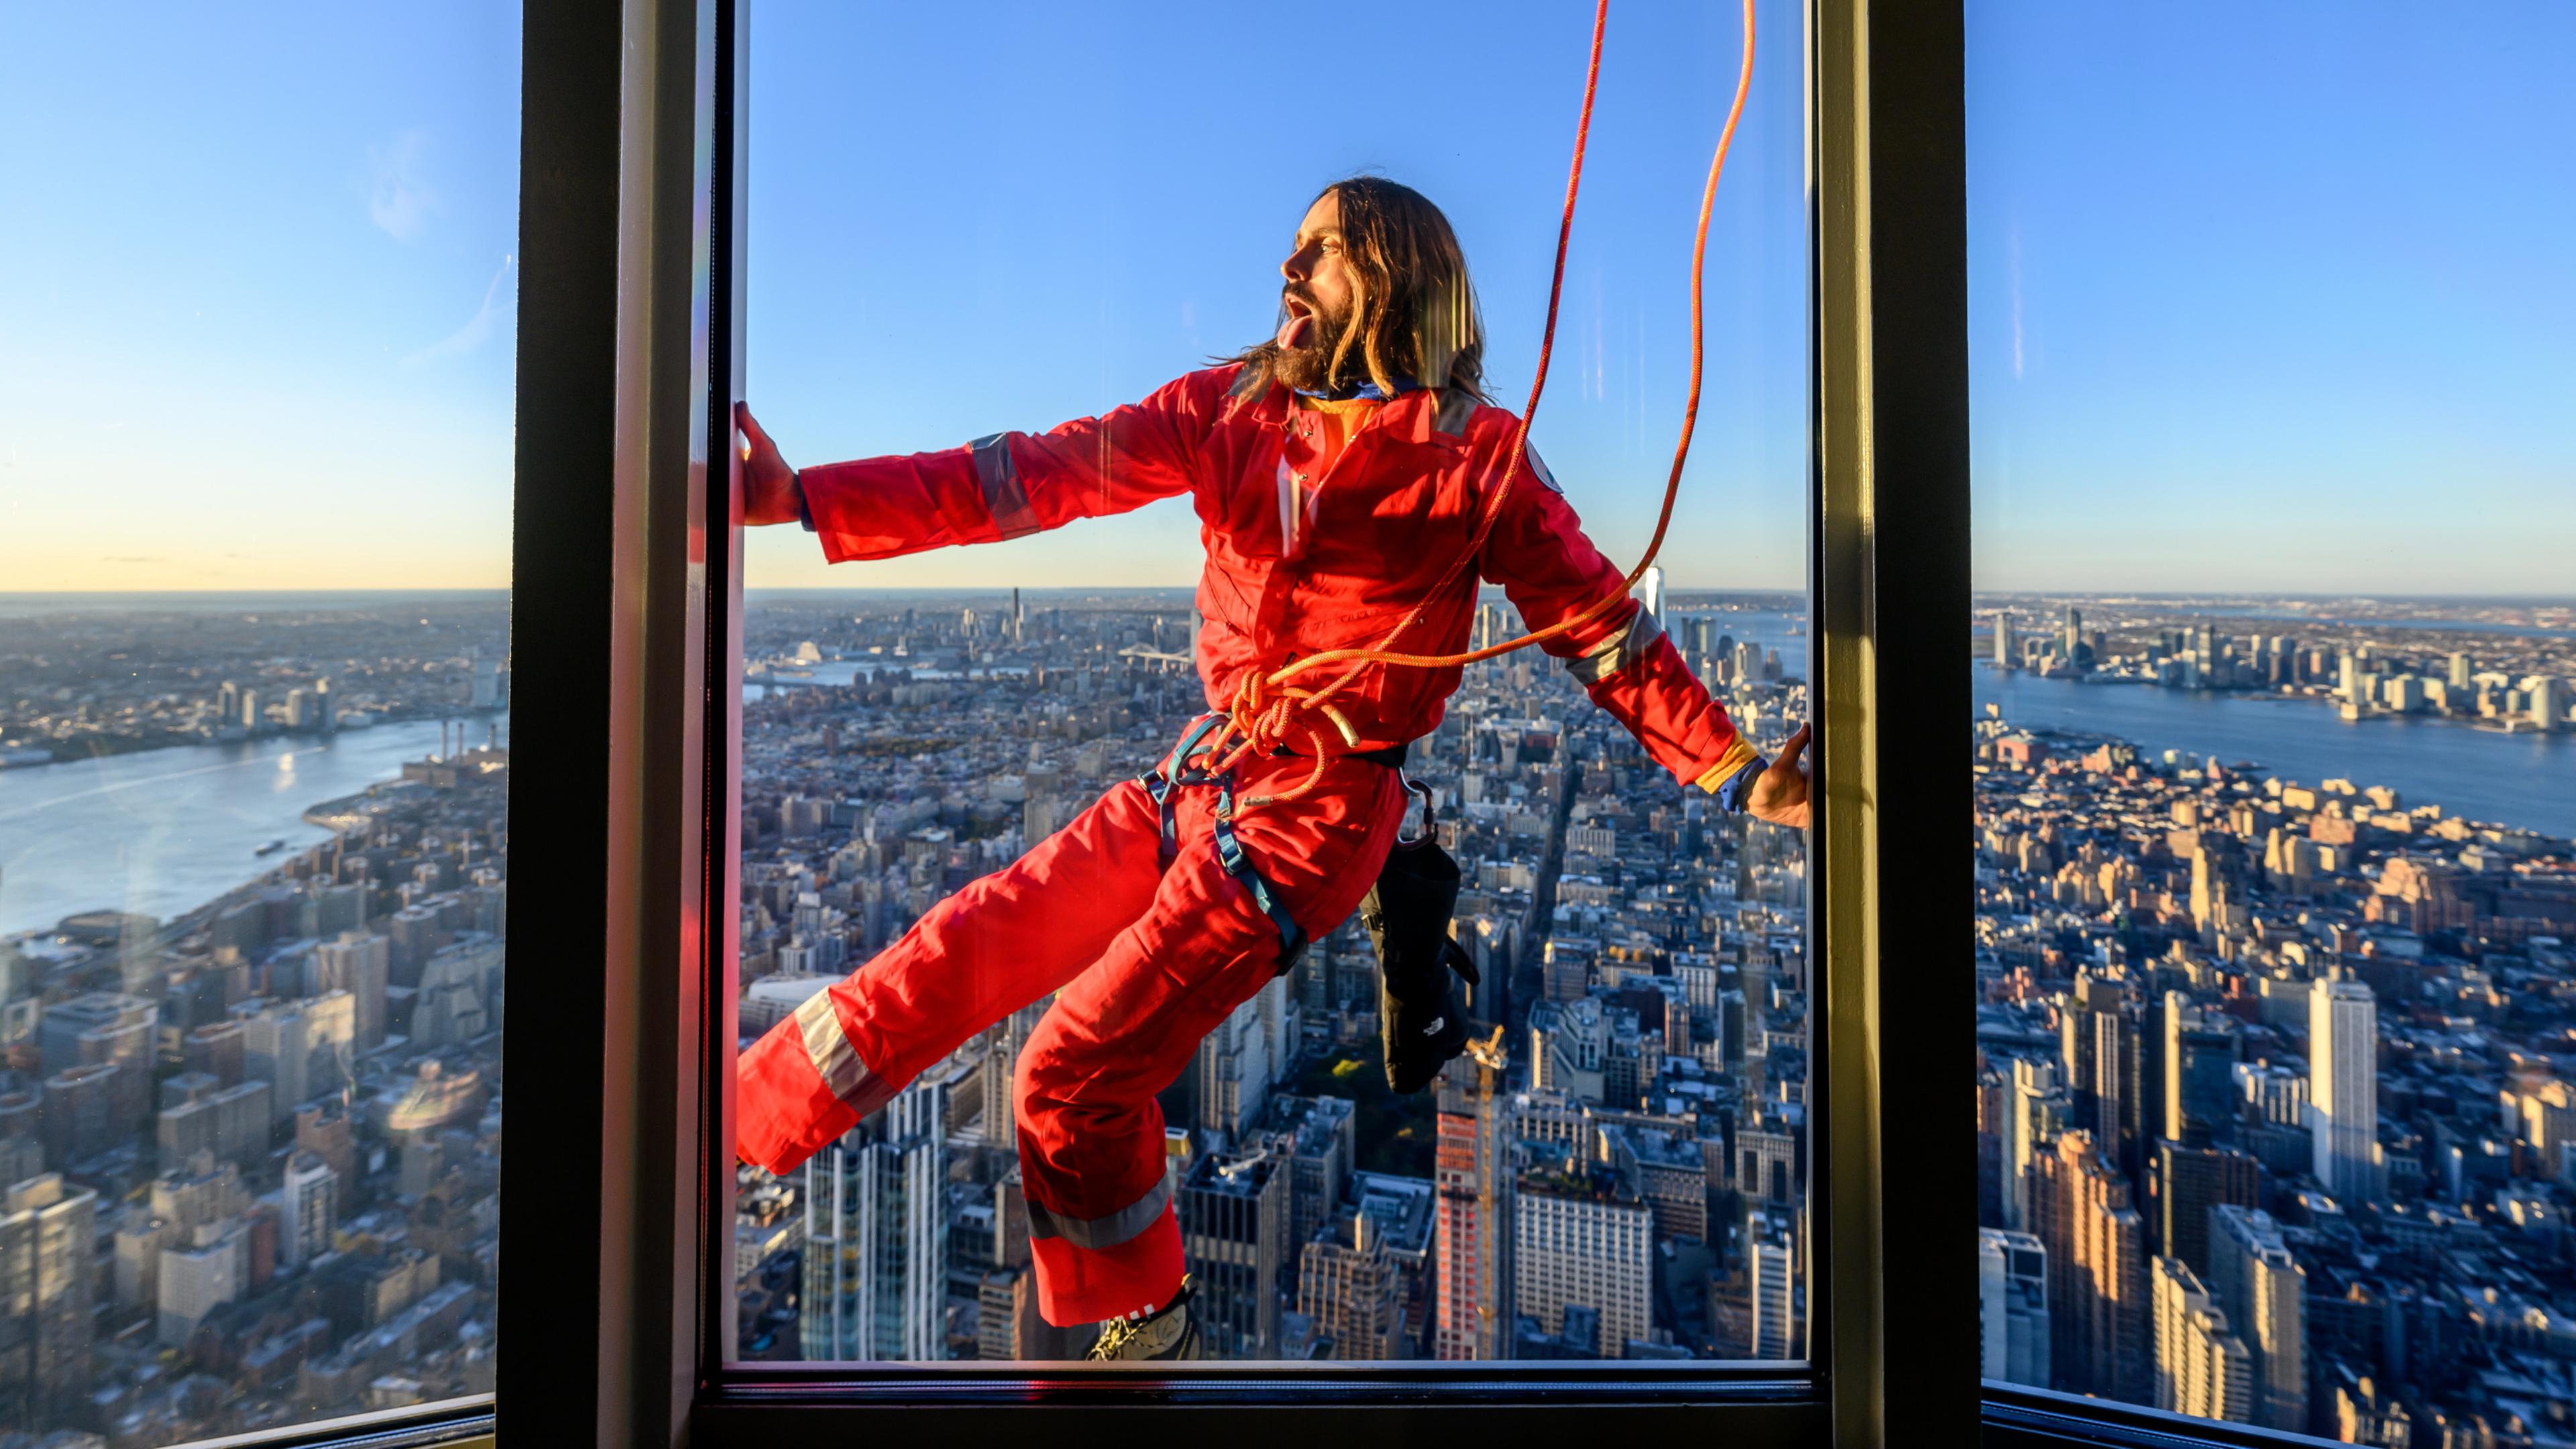  US-Schauspieler Jared Leto klettert am Empire State Building.In rotem Sportanzug, mit Sonnenbrille und an Seilen befestigt kletterte der Schauspieler und Sänger einen Teil der Außenwand oben am Gebäude hinauf. 